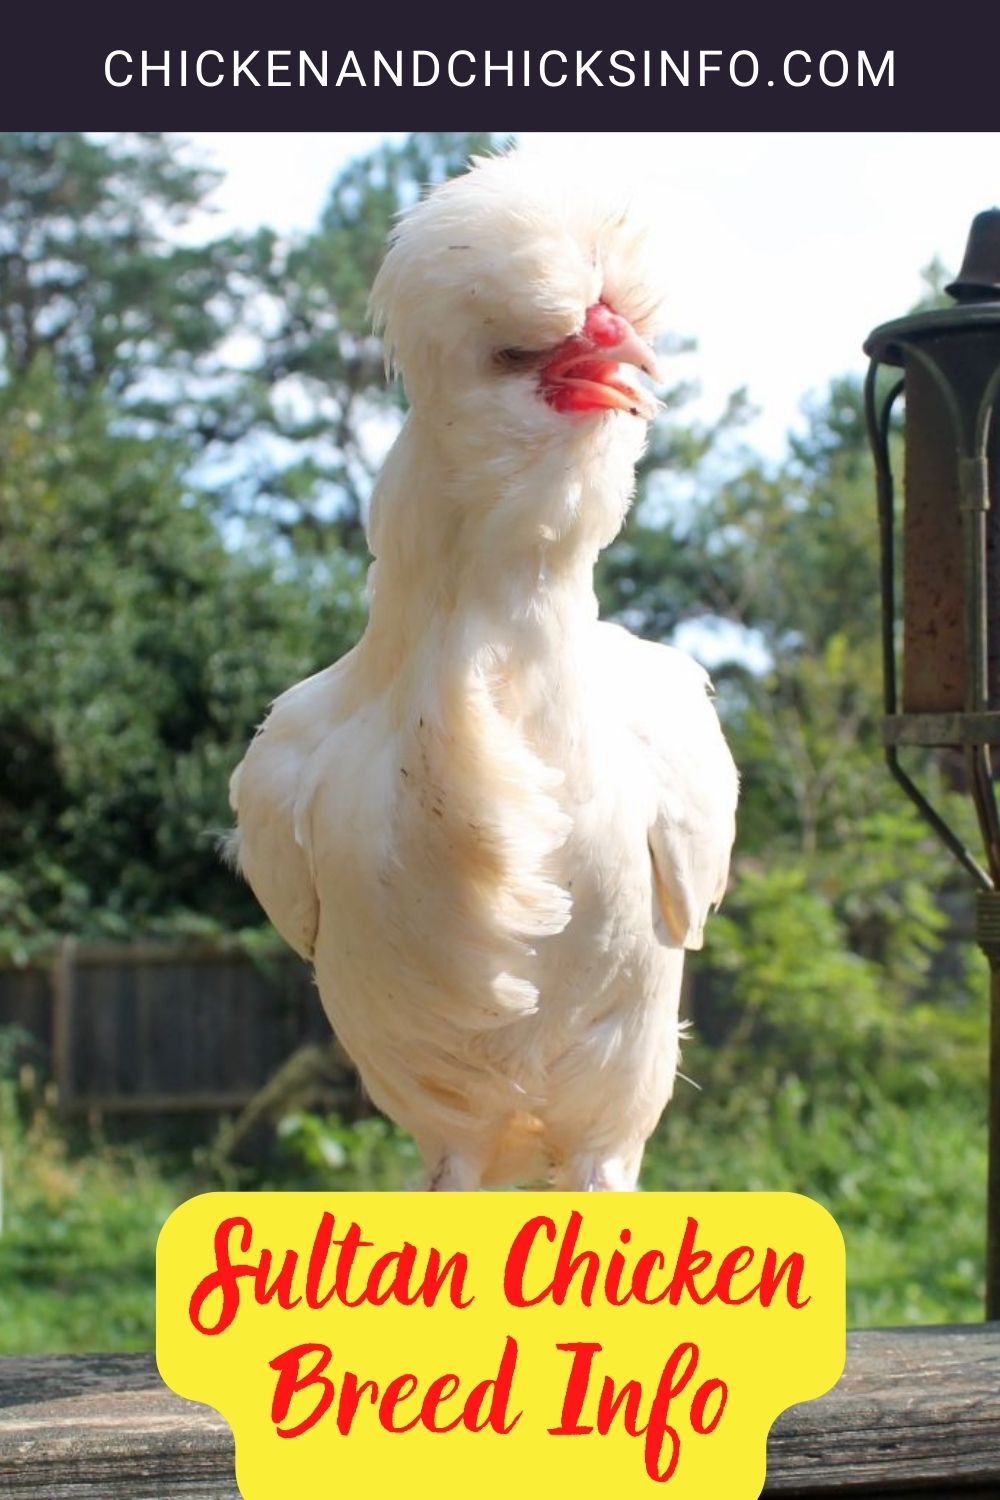 Sultan Chicken Breed Info pinterest image.